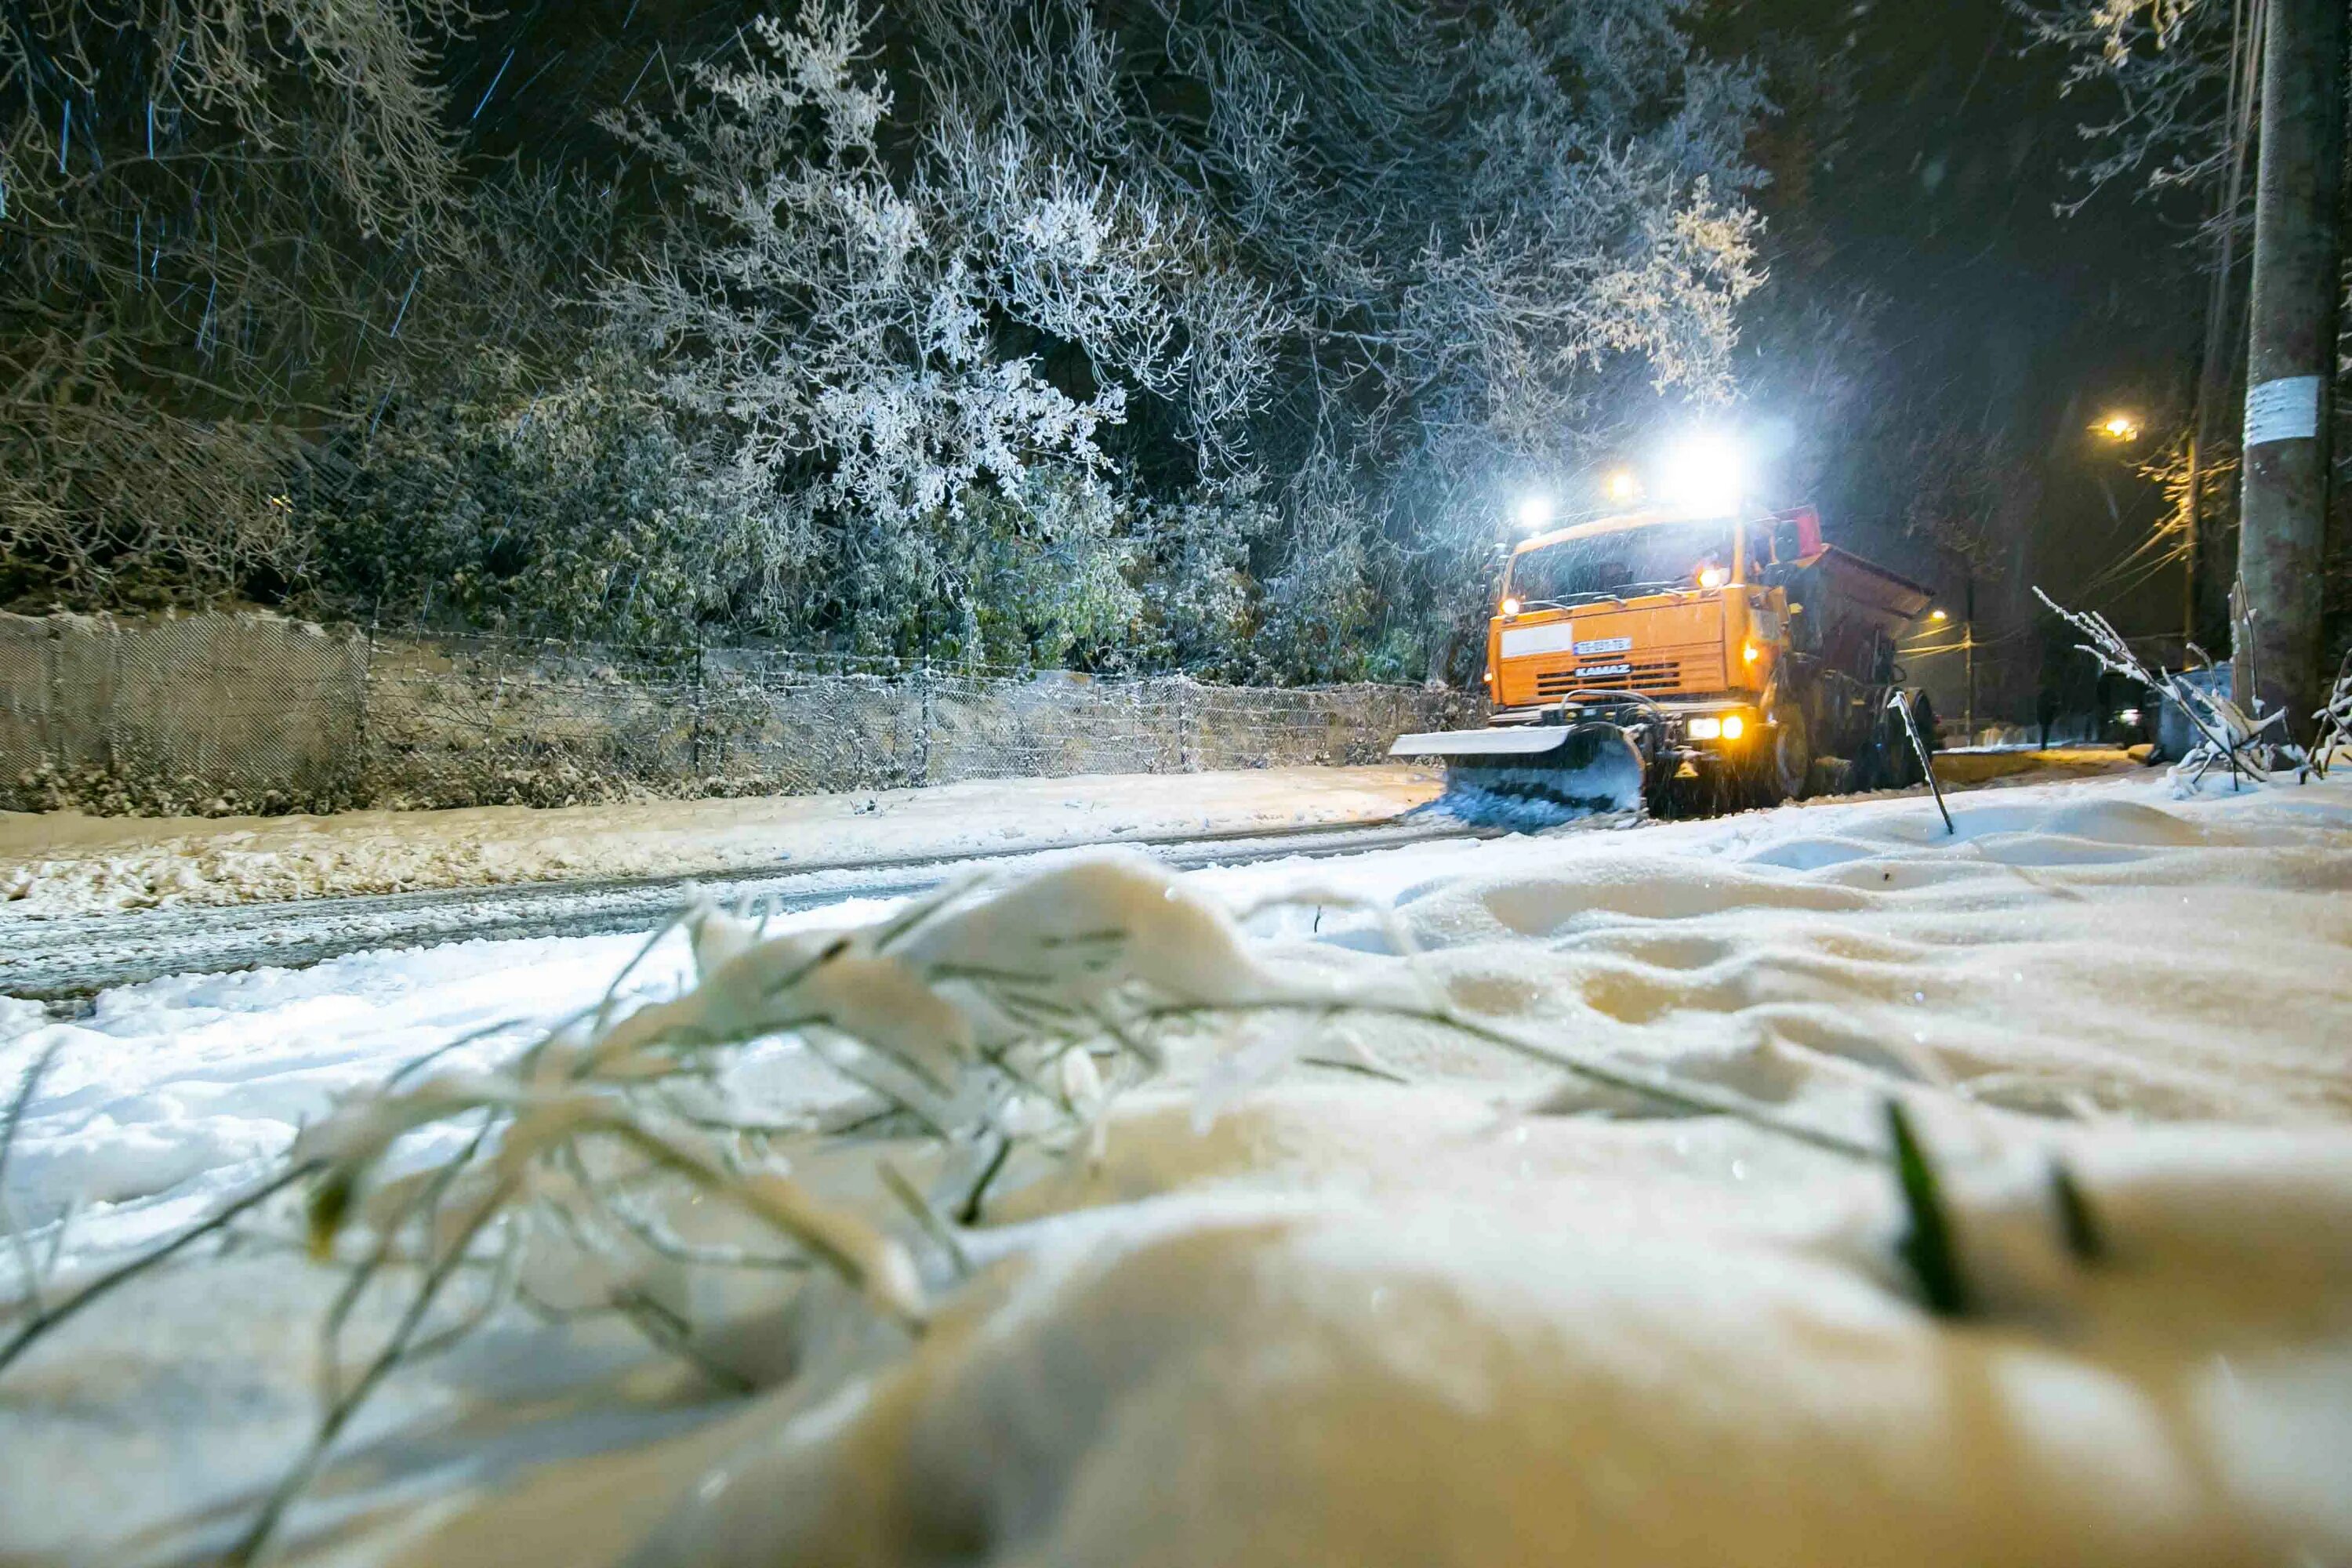 Наличие снега на дорогах. Снег на дороге. Занесенная снегом дорога. Tovli Mosula. Tovli sabadurebze.